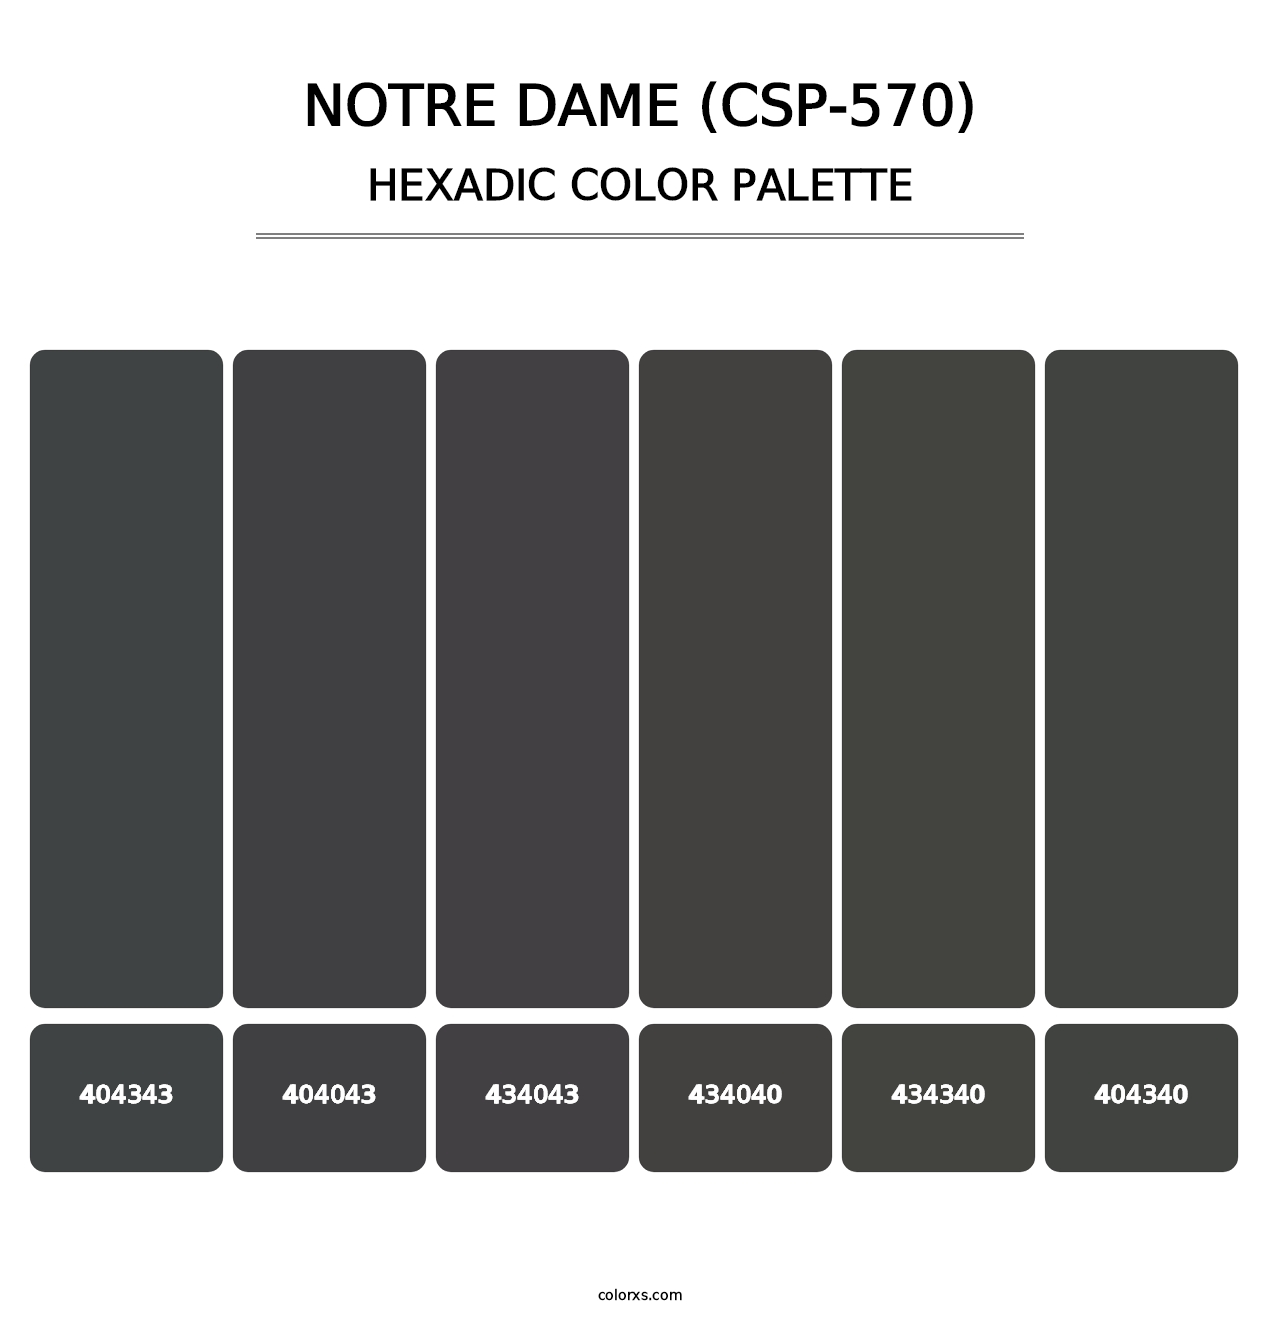 Notre Dame (CSP-570) - Hexadic Color Palette